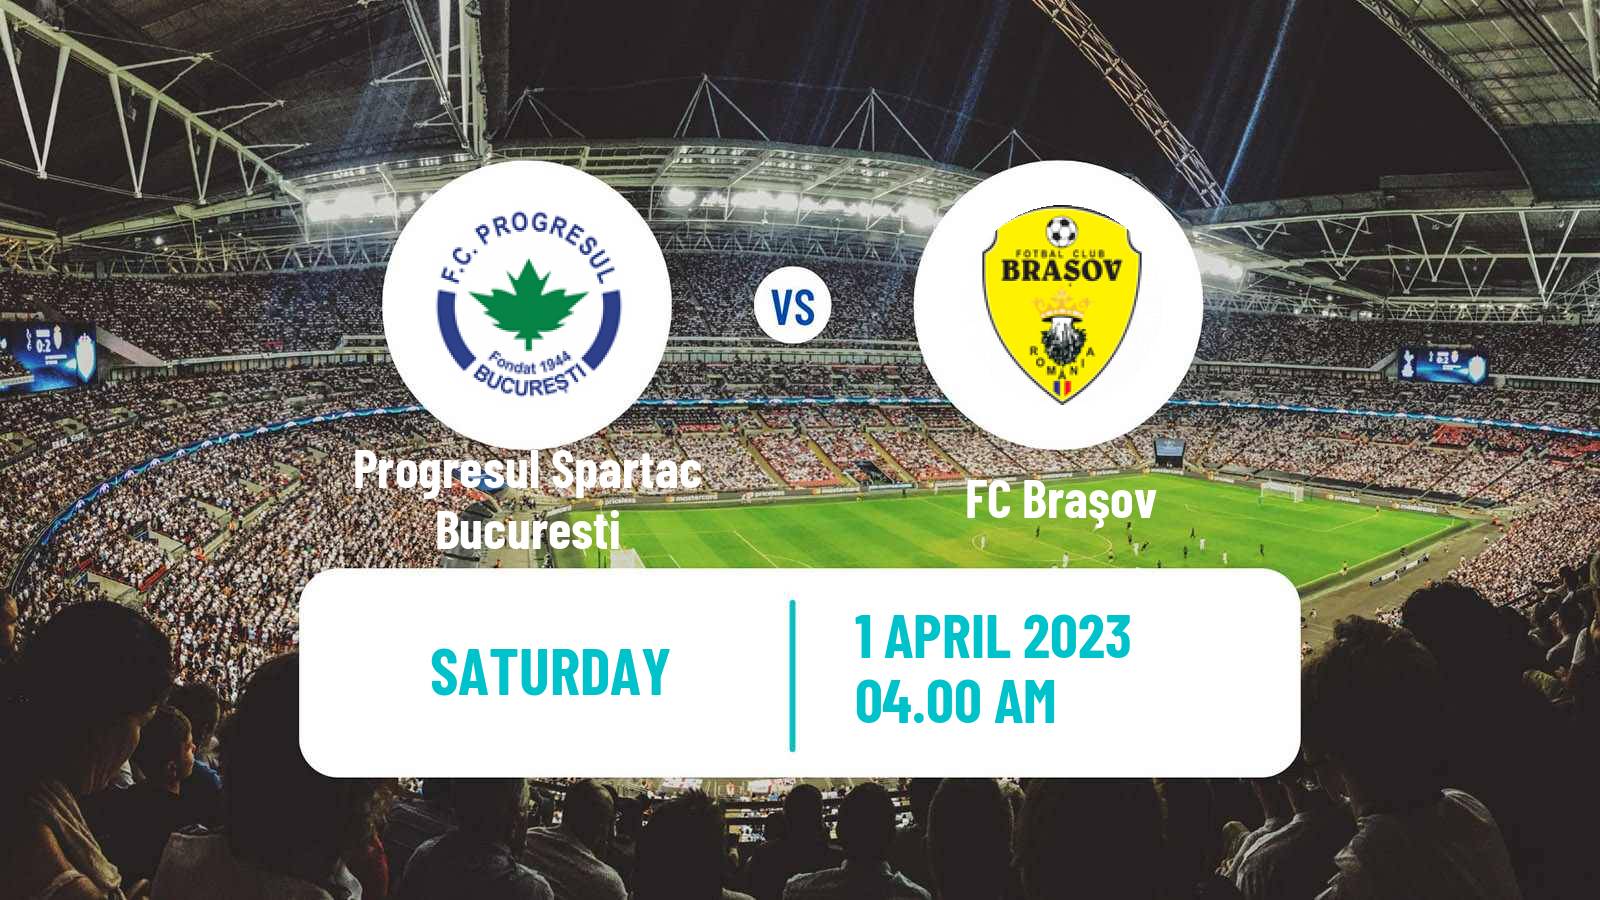 Soccer Romanian Division 2 Progresul Spartac Bucuresti - Braşov